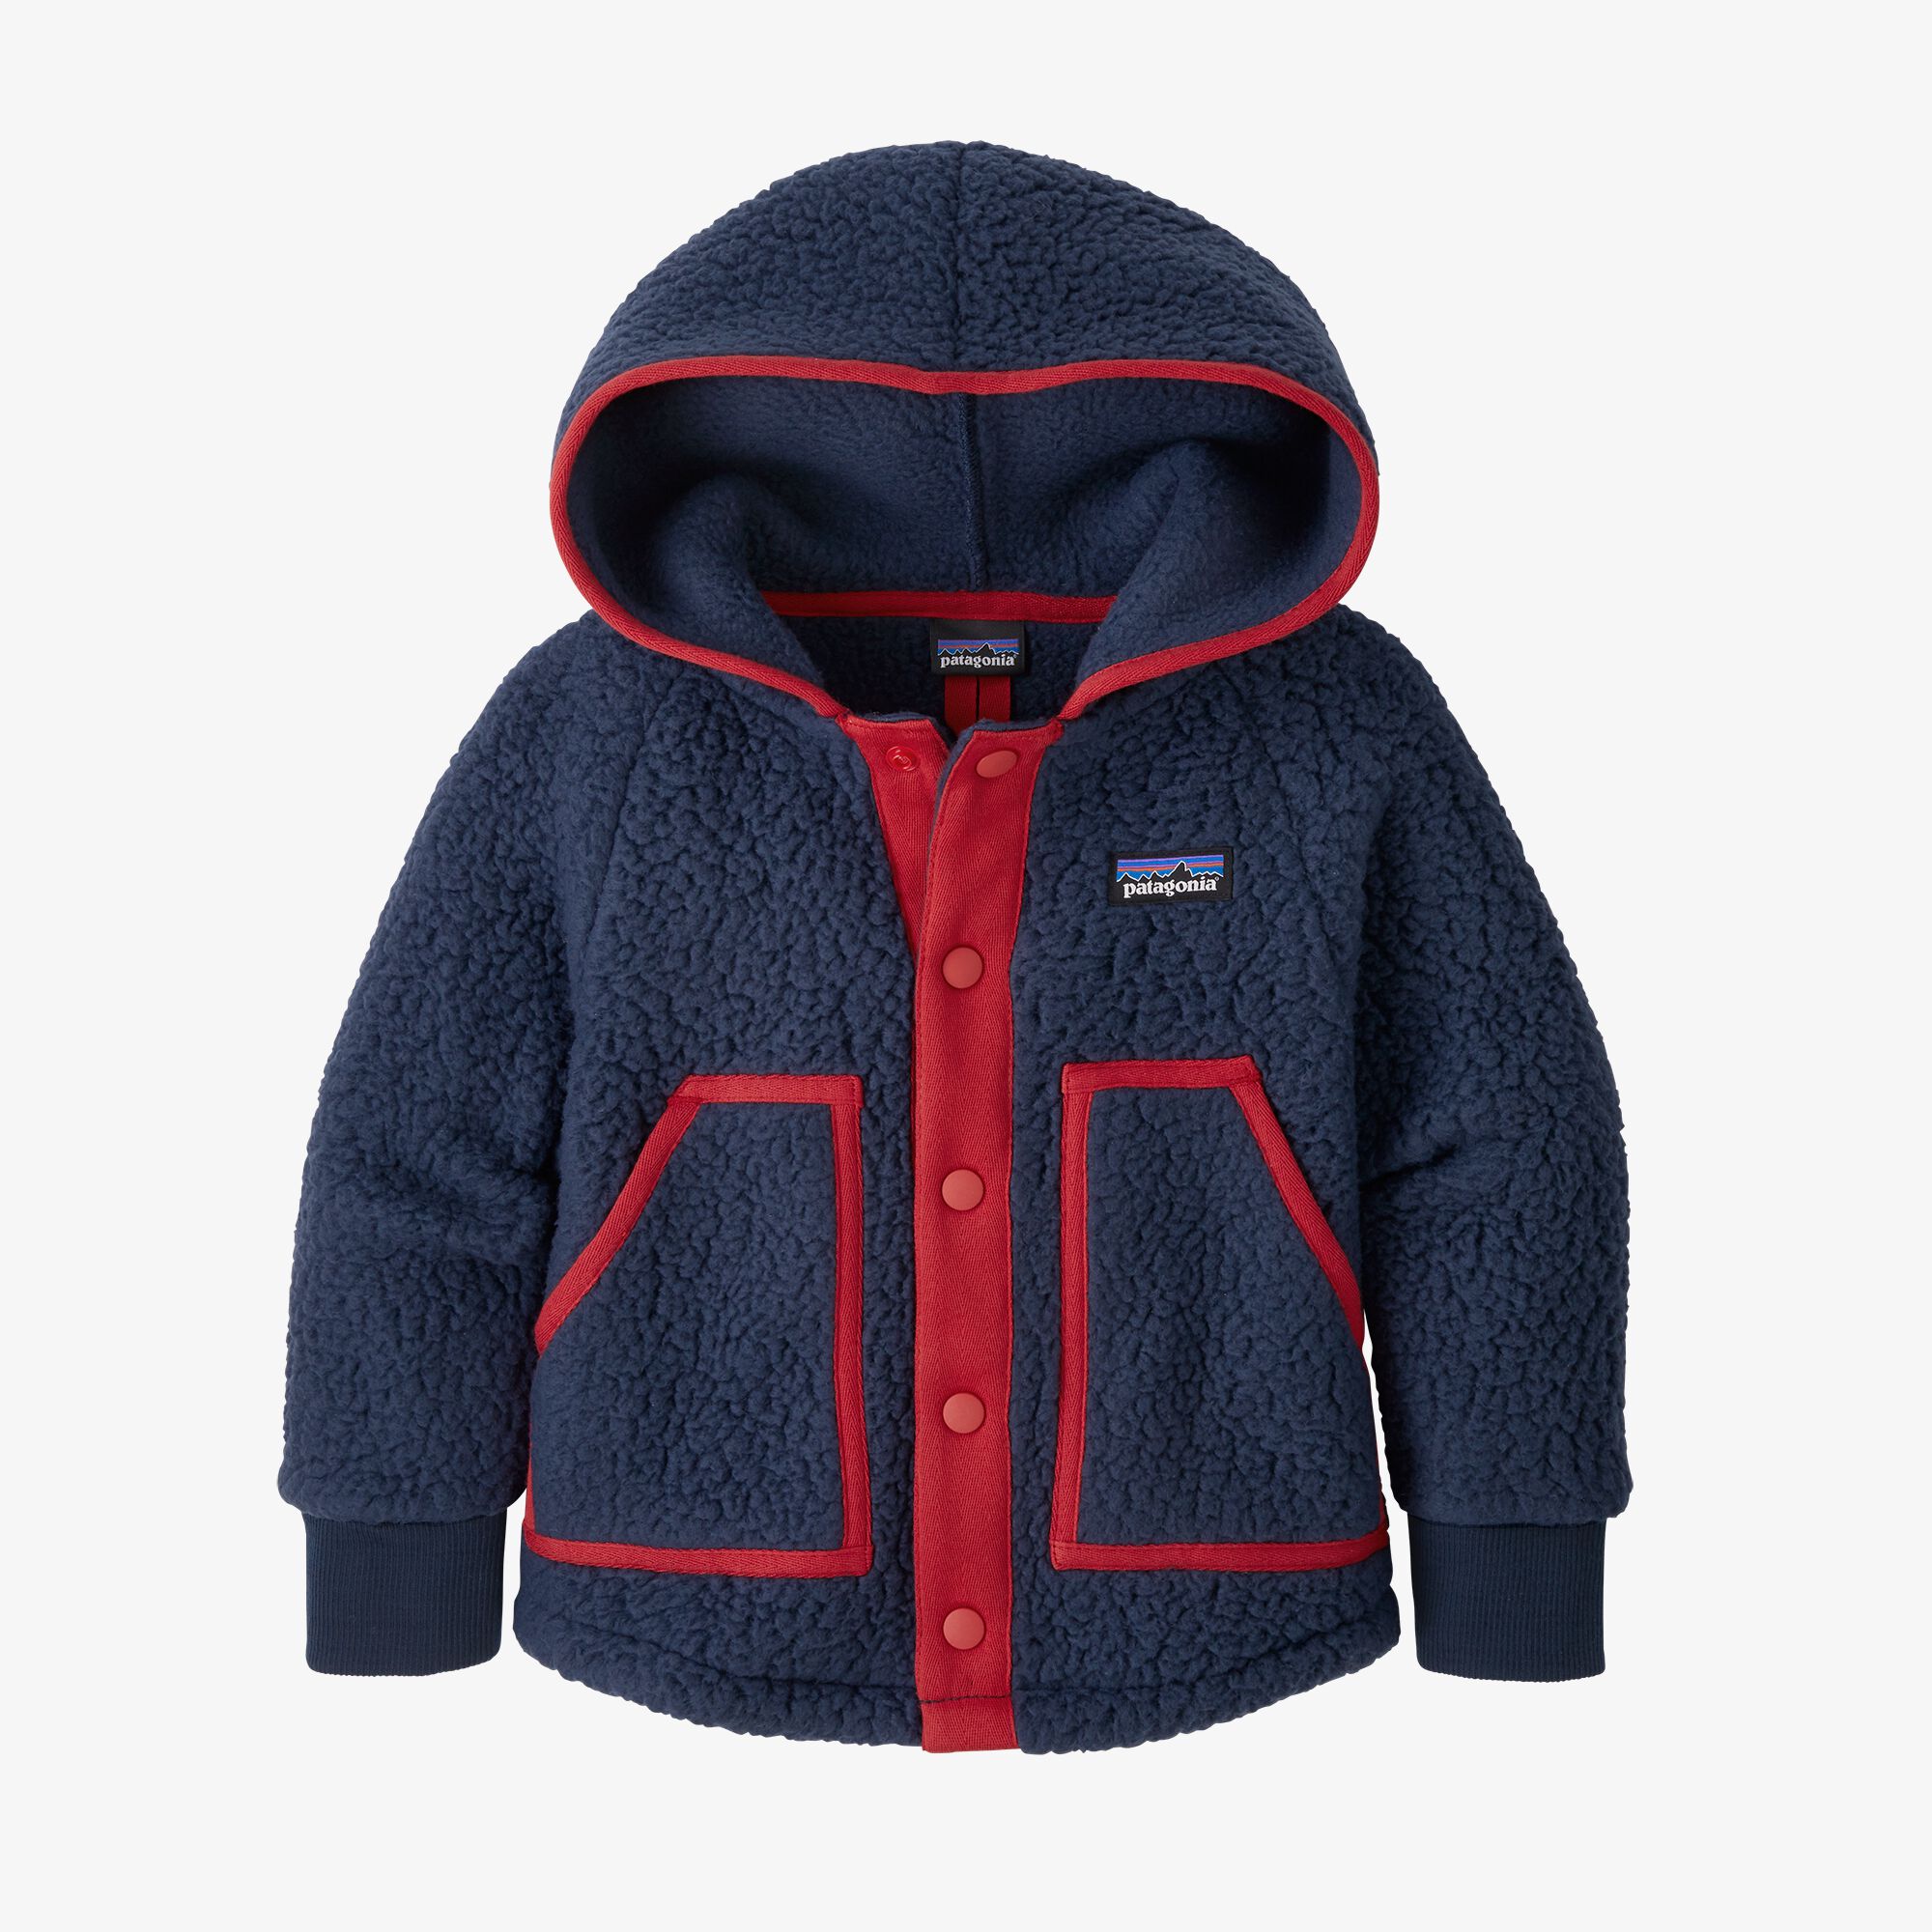 Patagonia Baby Retro Pile Jacket